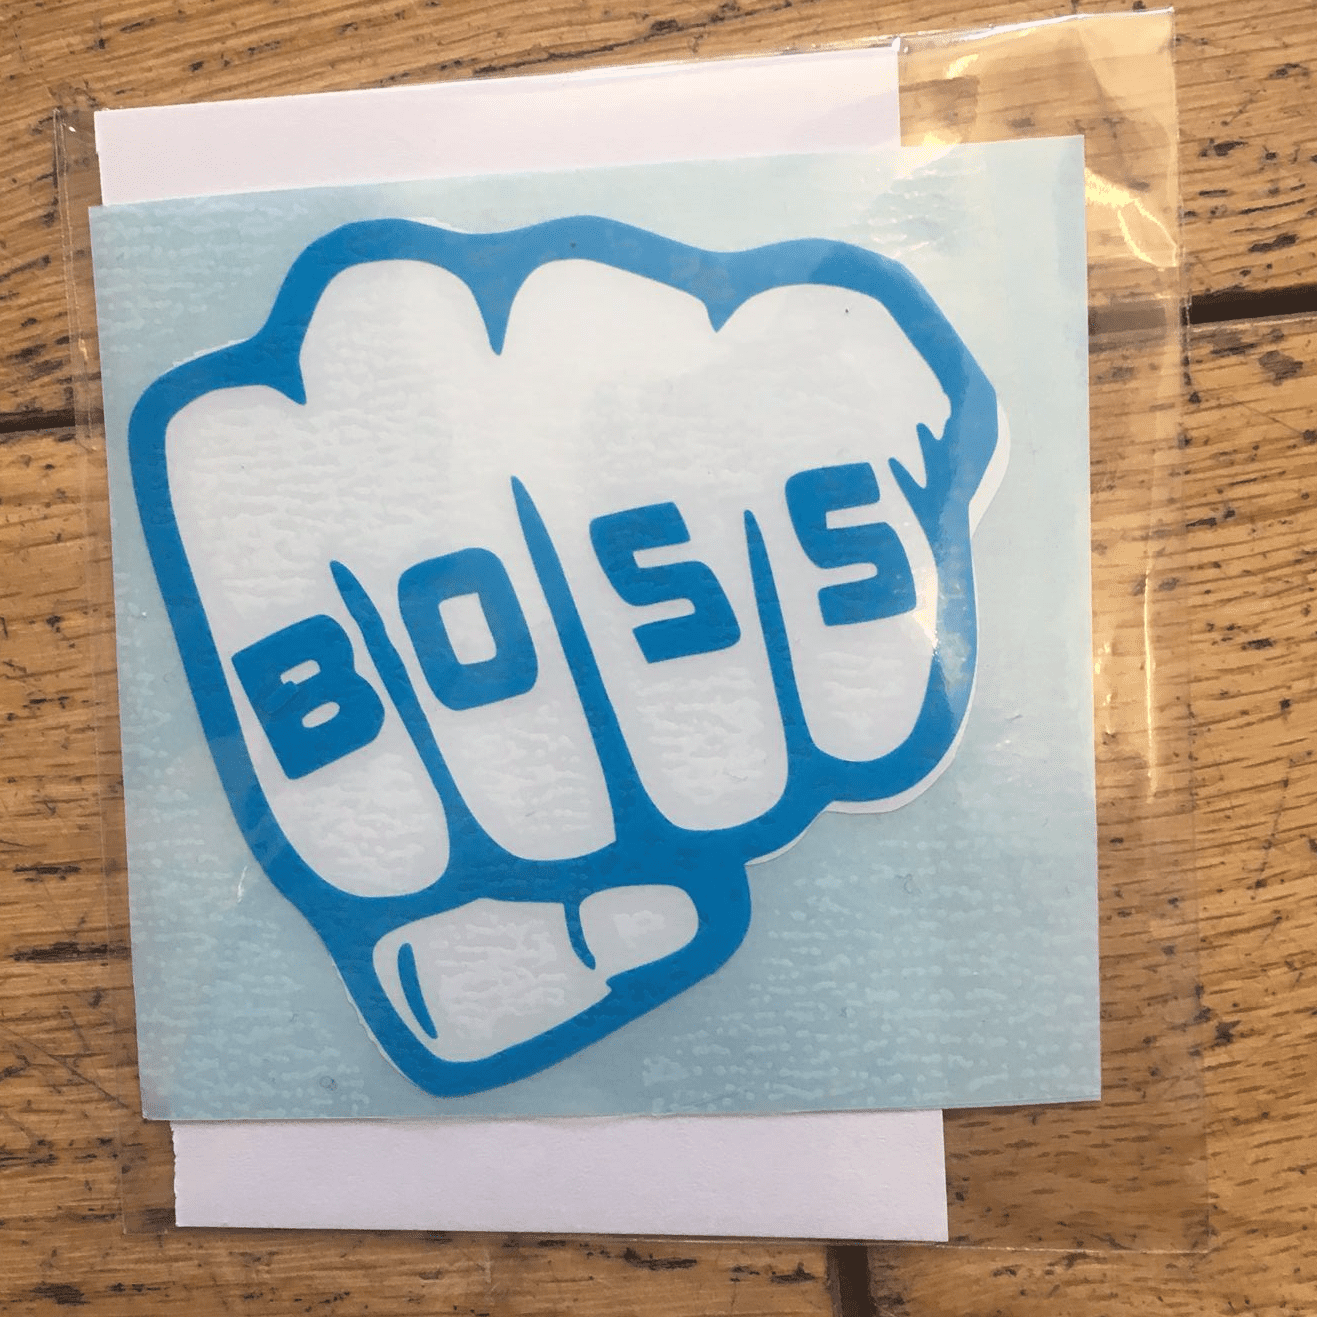 Boss - Blue